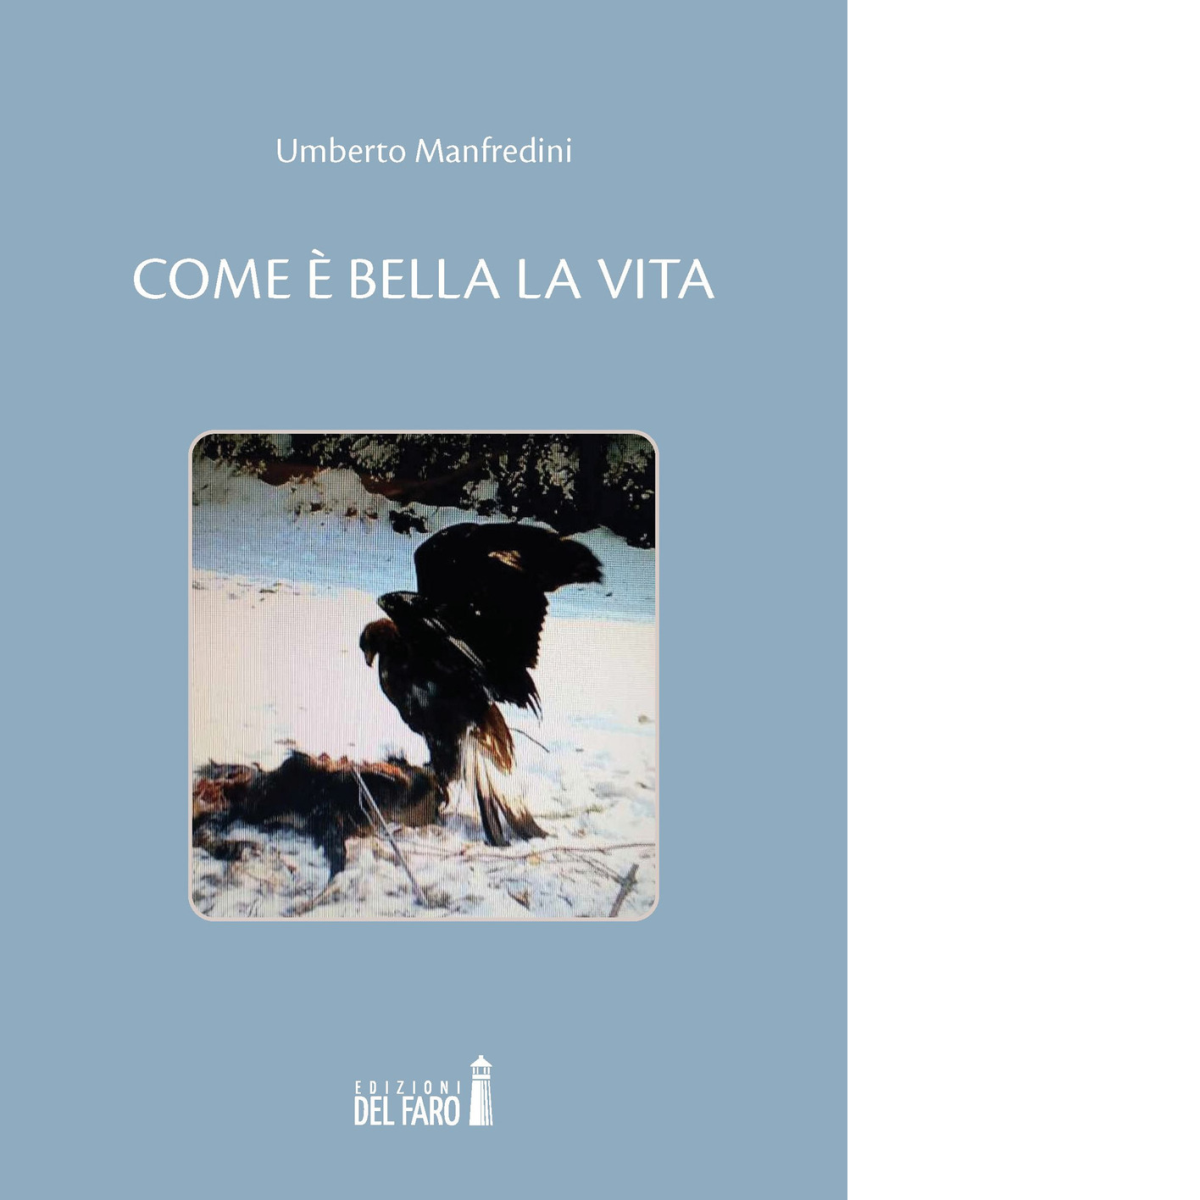 Come ? bella la vita di Manfredini Umberto - Edizioni Del faro, 2021 libro usato